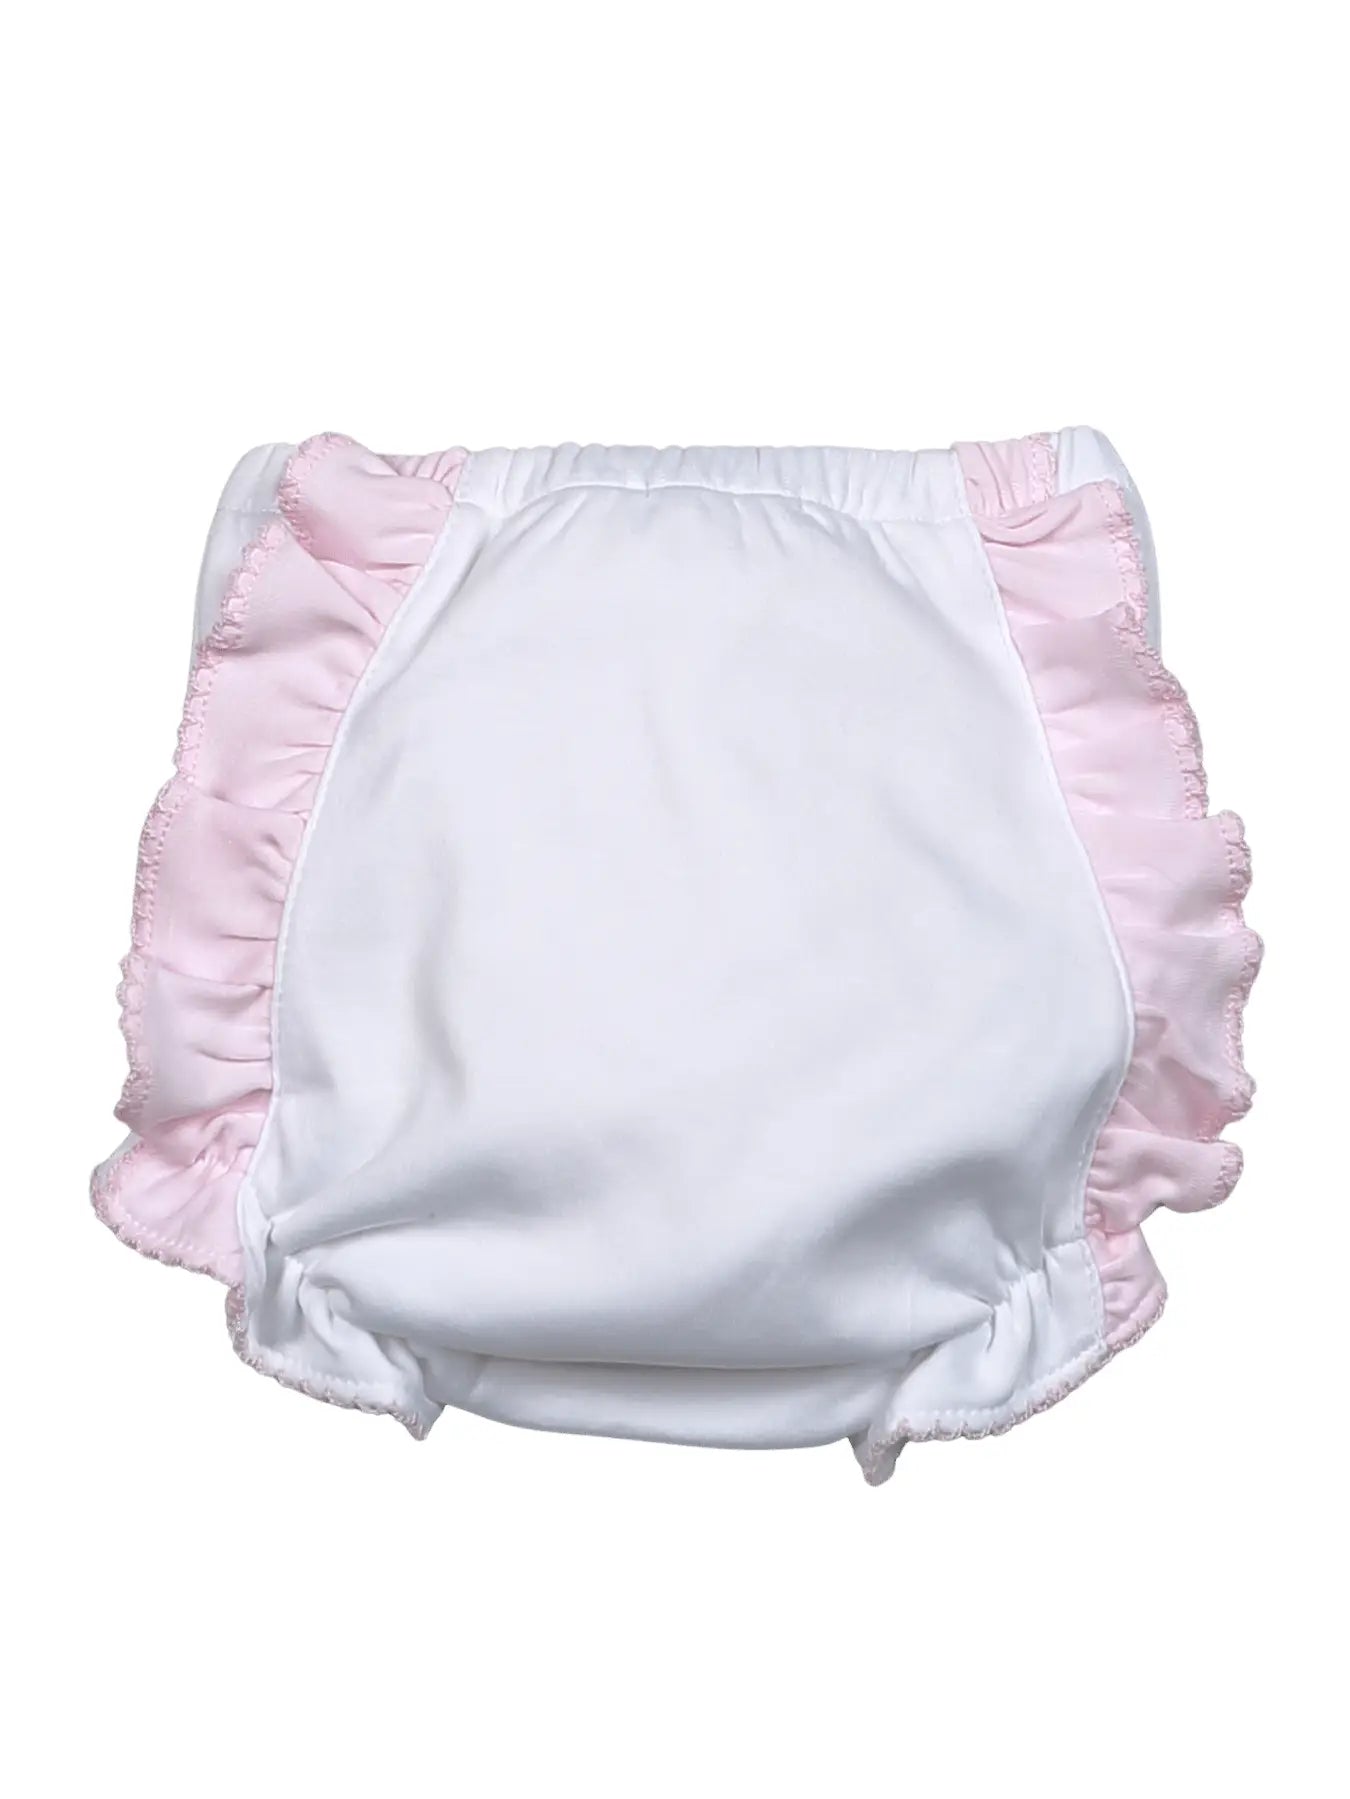 Baby Loren: Pima Diaper Cover - White/Pink Ruffle